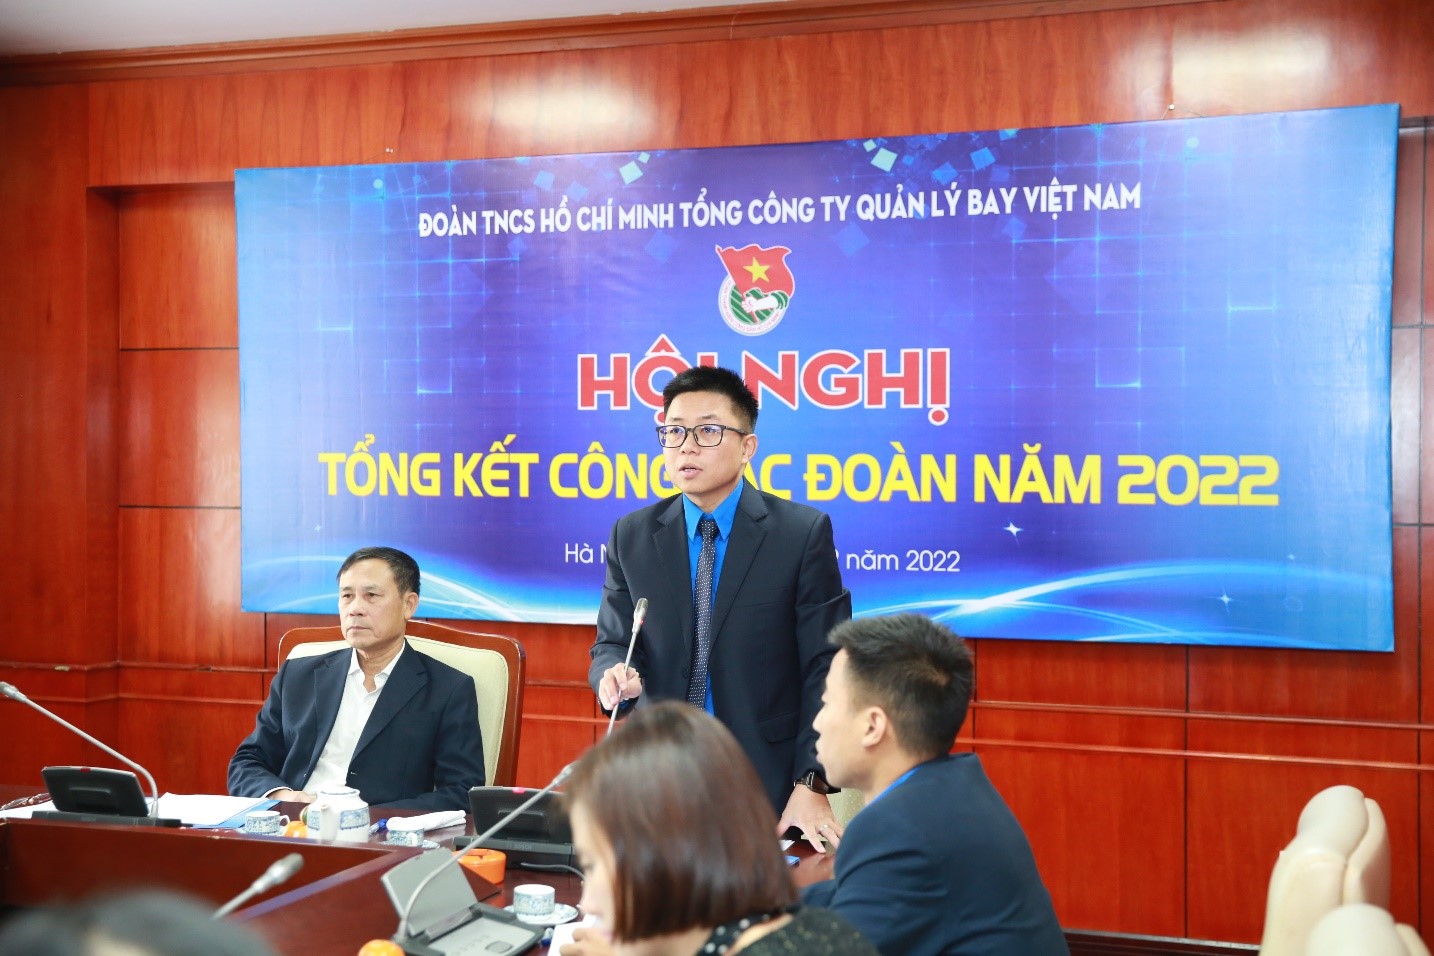 Đoàn Thanh niên Tổng công ty Quản lý bay Việt Nam tổ chức Hội nghị Tổng kết công tác Đoàn năm 2022